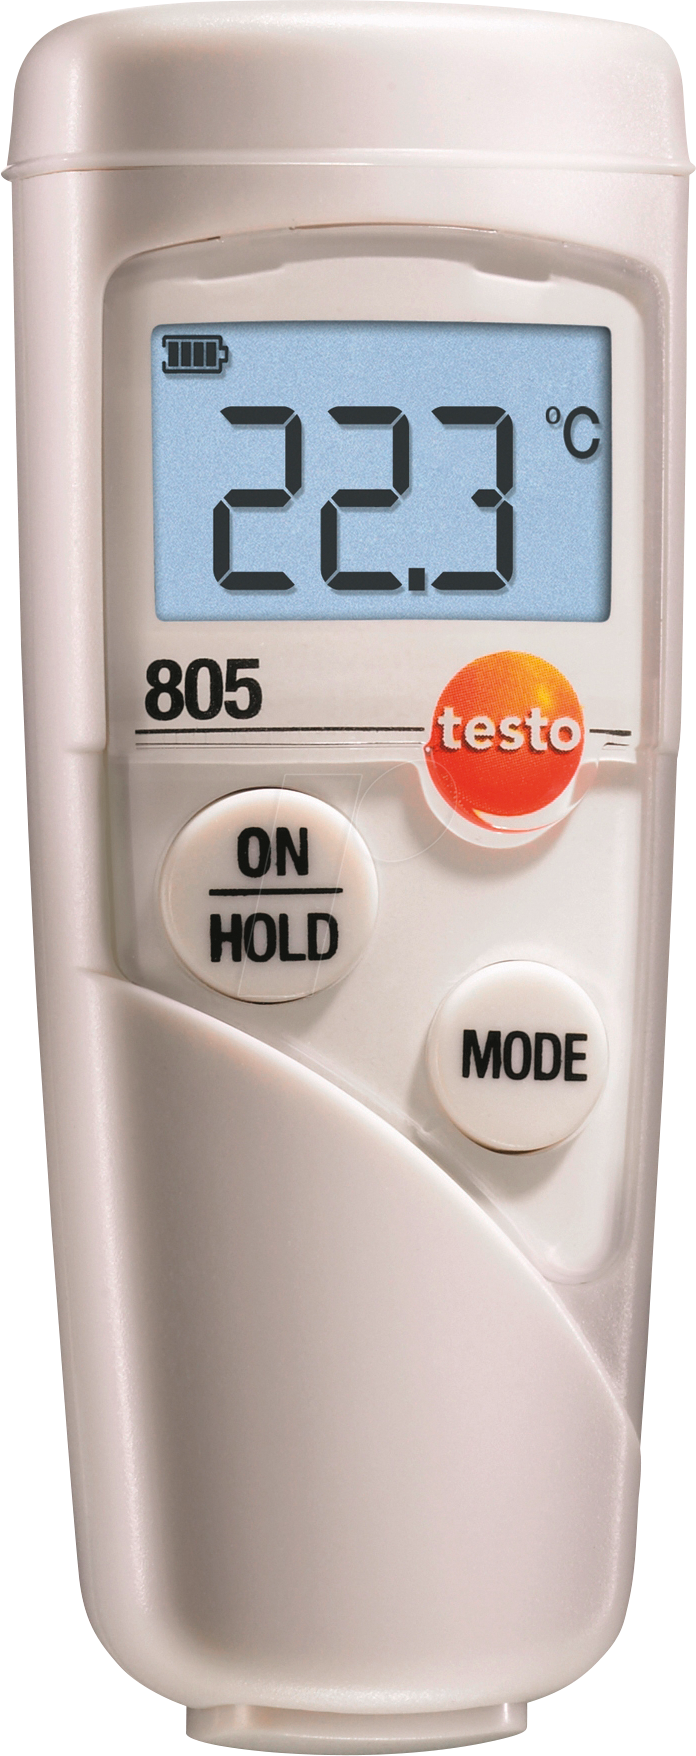 TESTO 0563 8051 - Infrarot-Thermometer testo 805 Set, -25 bis +250 °C von TESTO